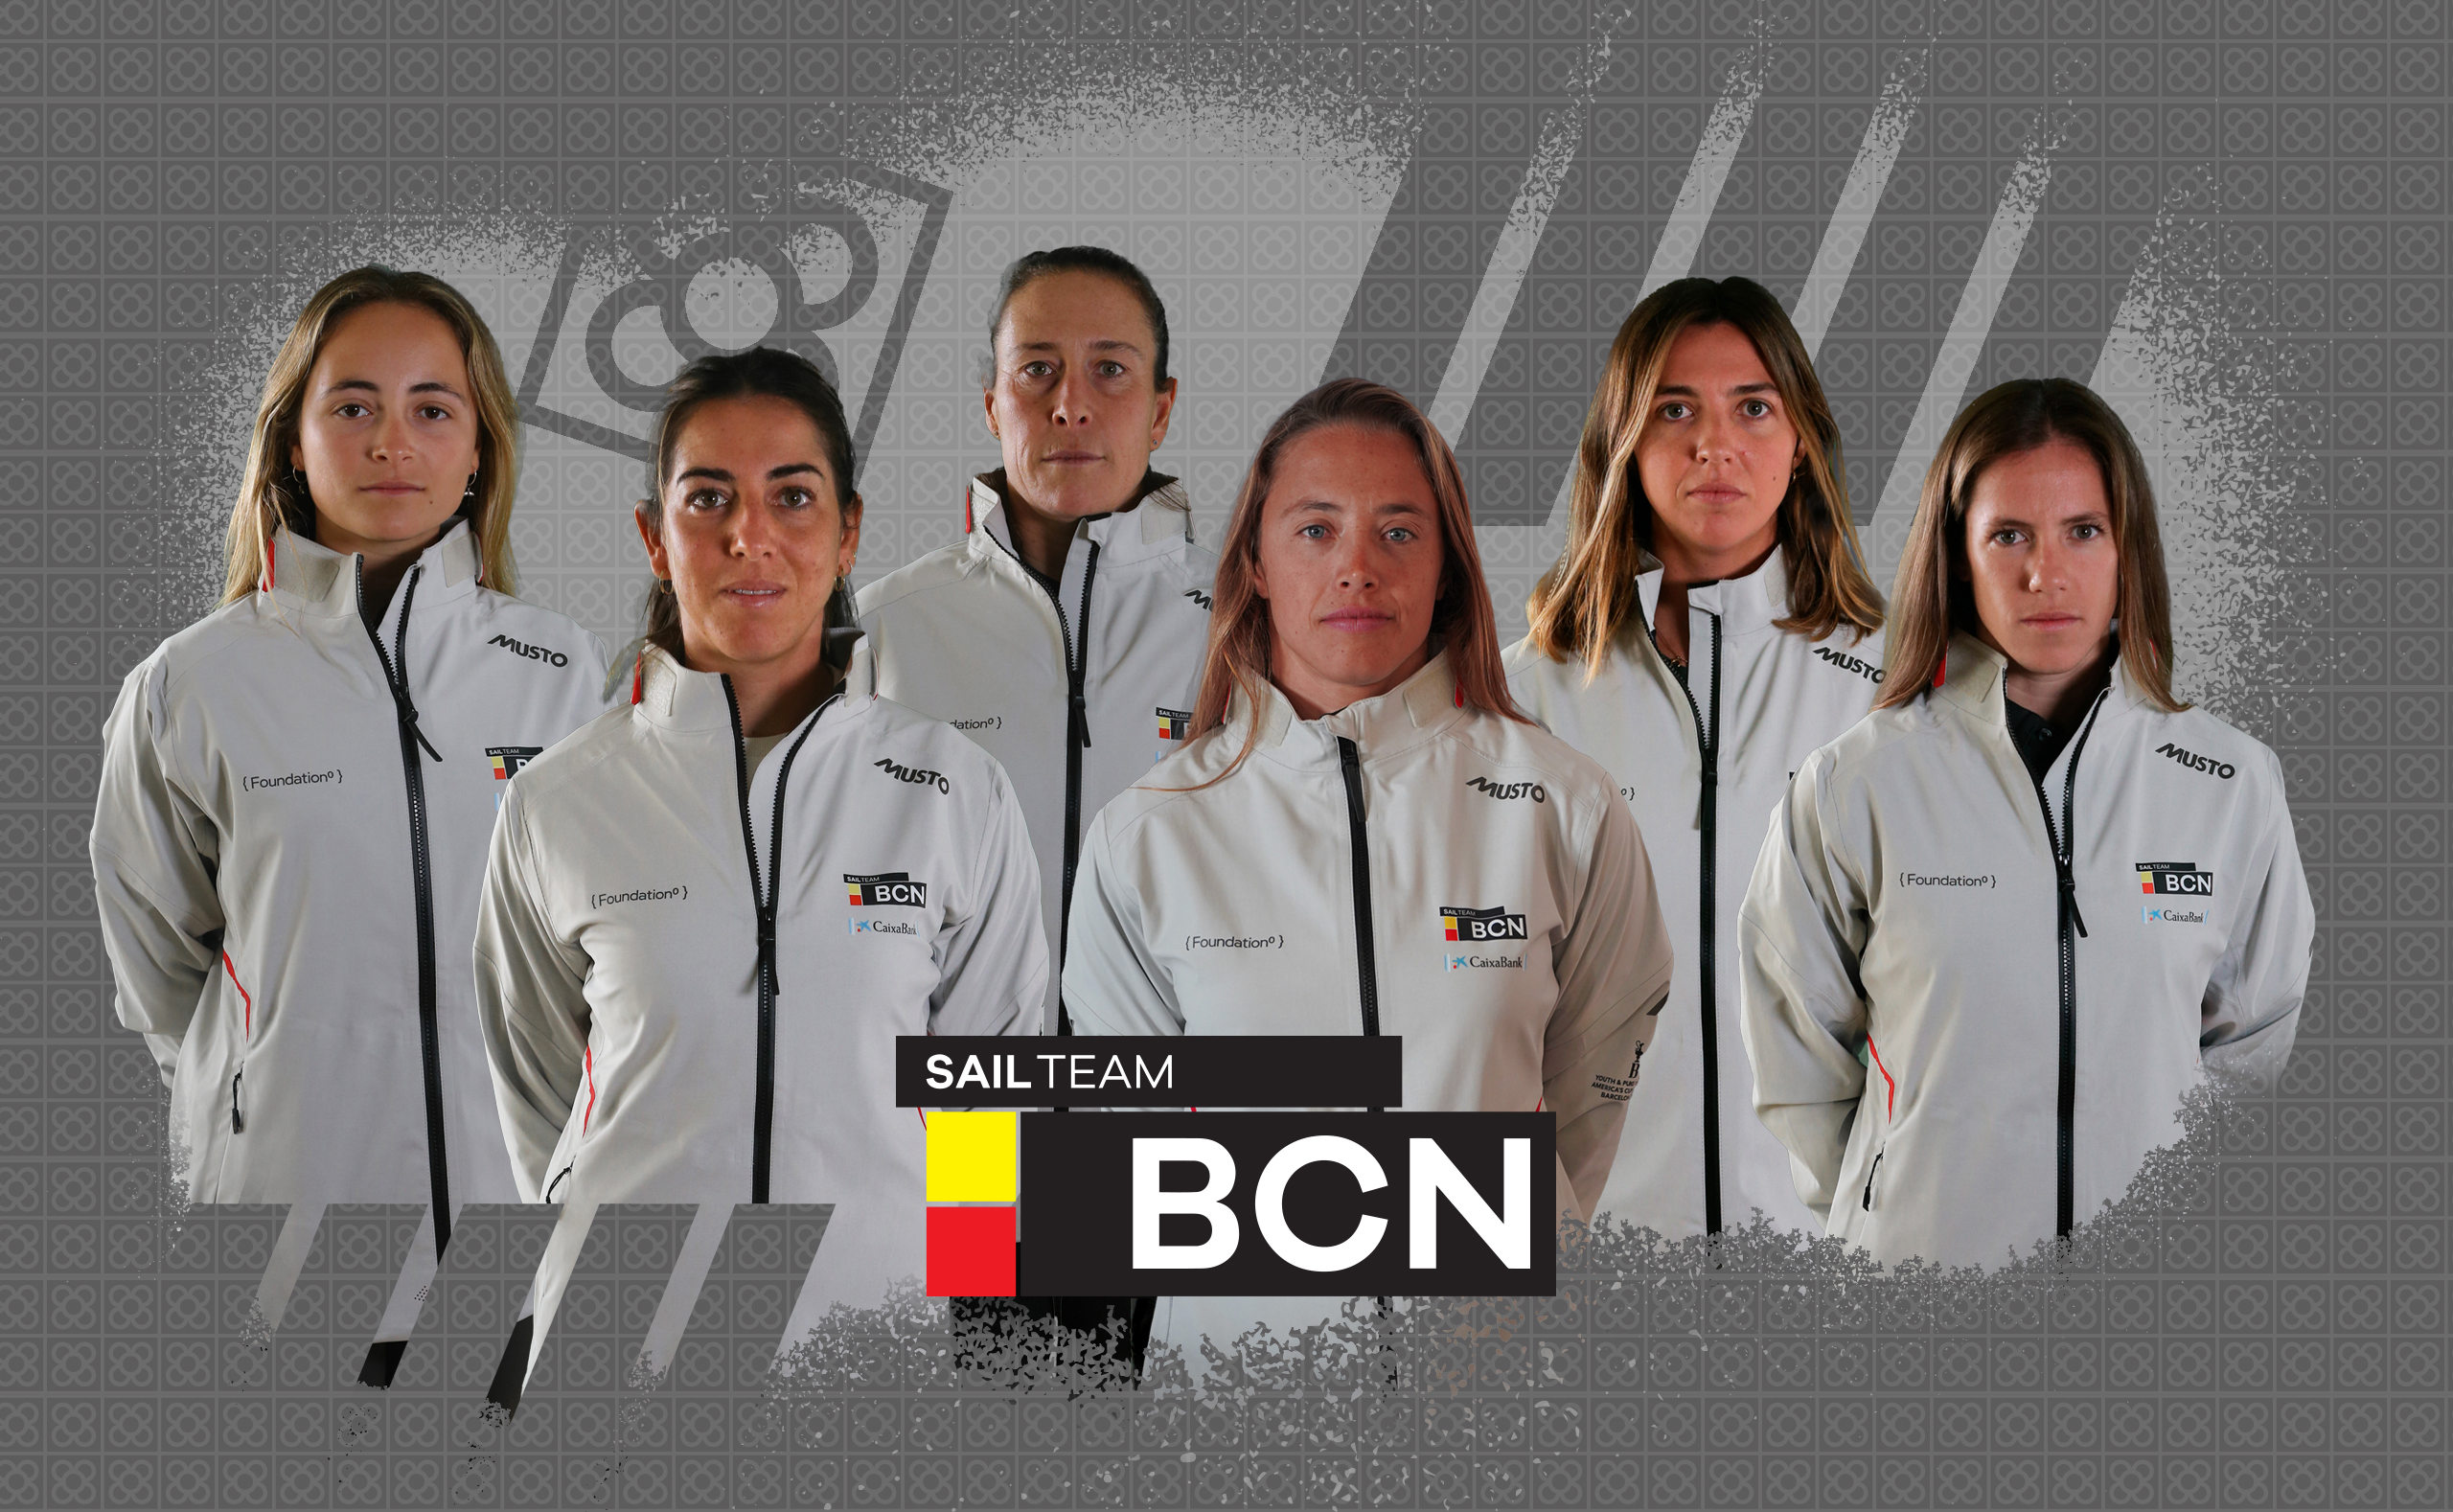 Sail Team BCN anuncia la incorporación de Nicole van der Velden al equipo femenino español.